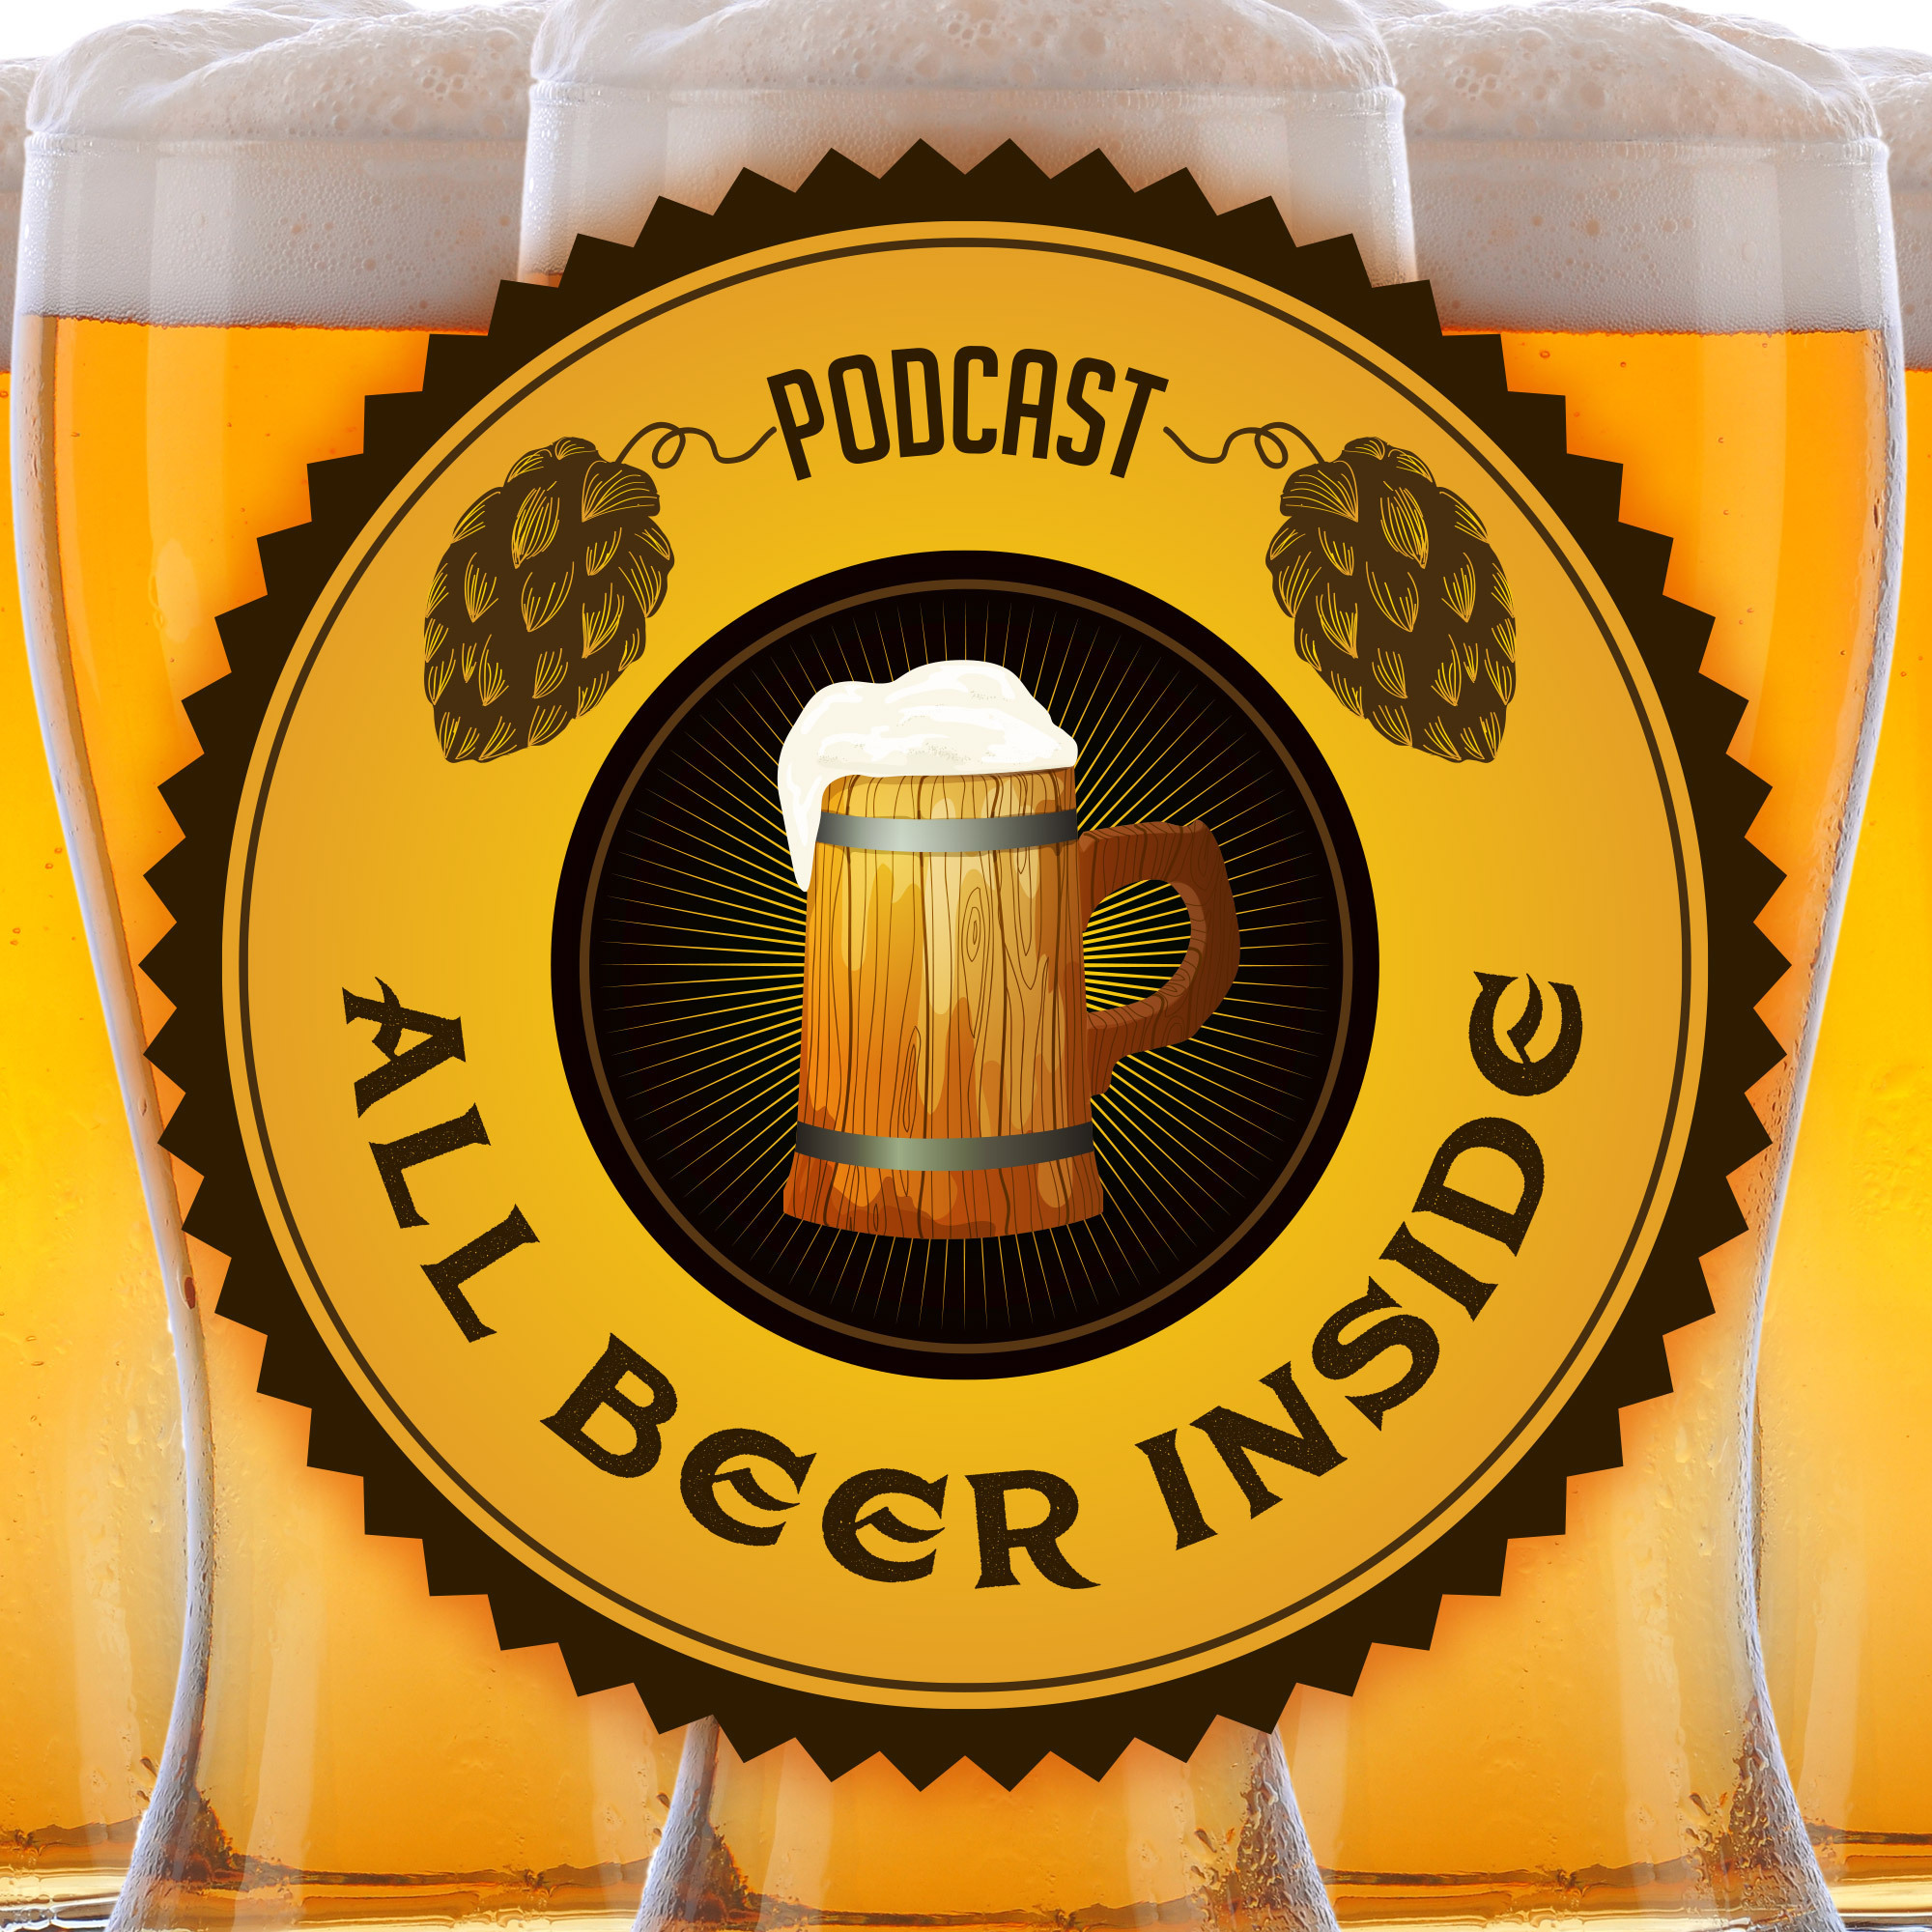 All Beer Inside Episode 28 - Going to the Nom Nom